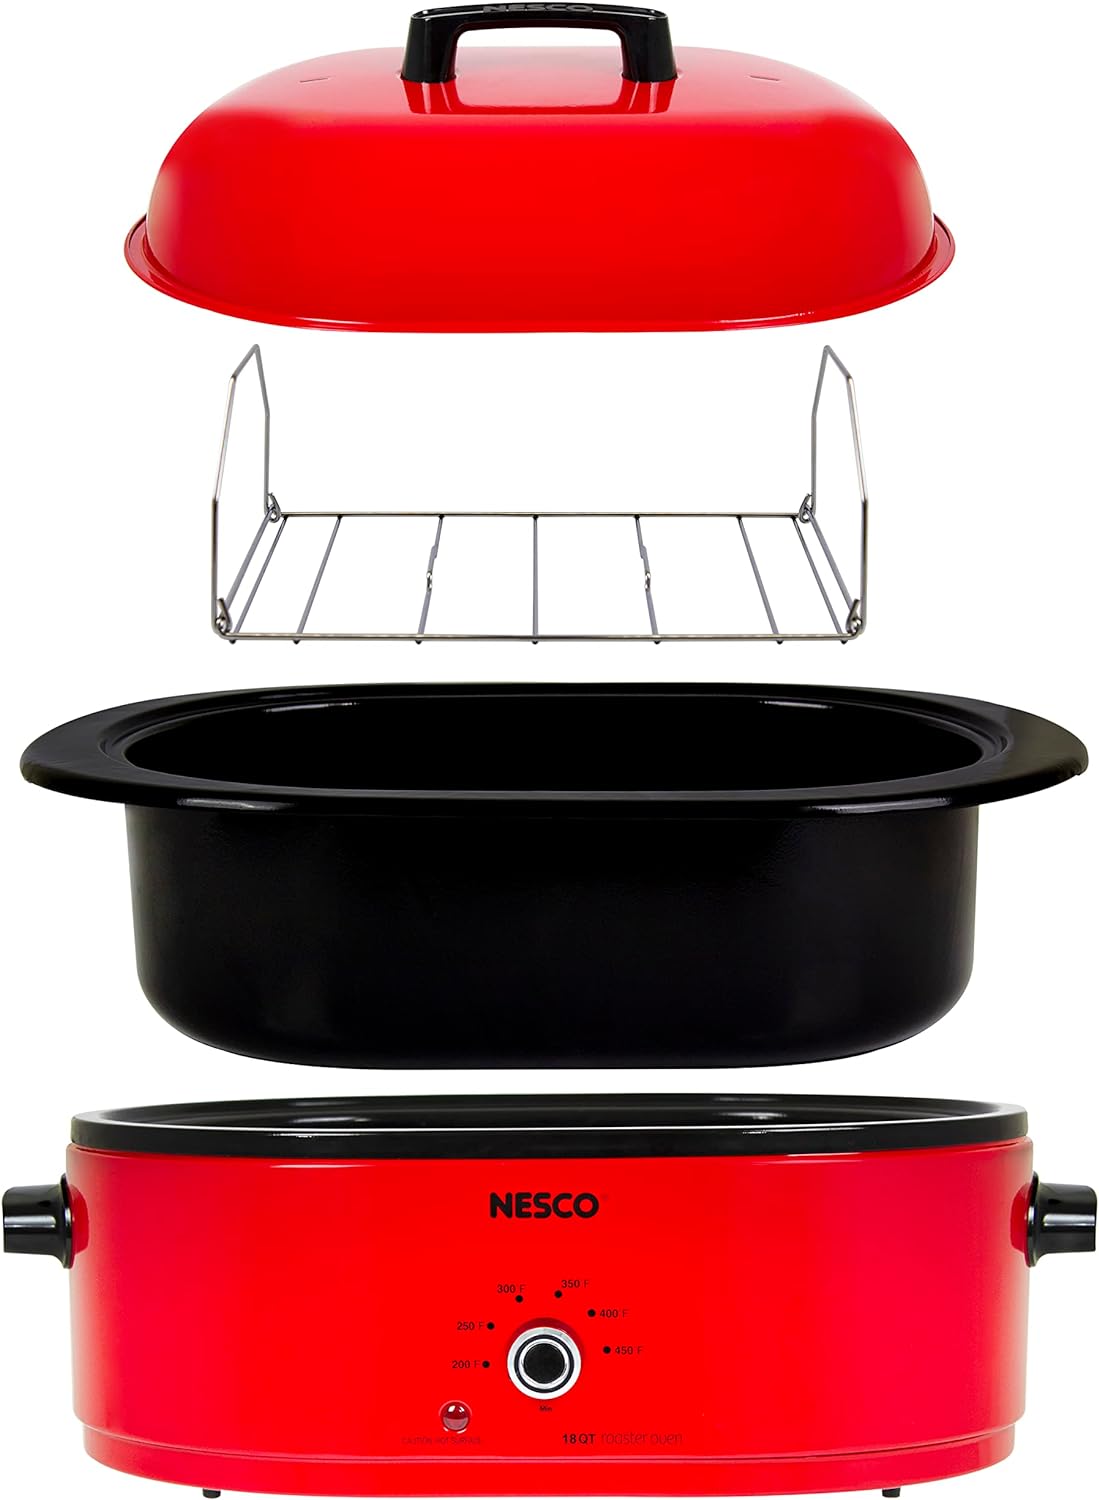 NESCO 18 Quart Roaster Slow Cooker - Red